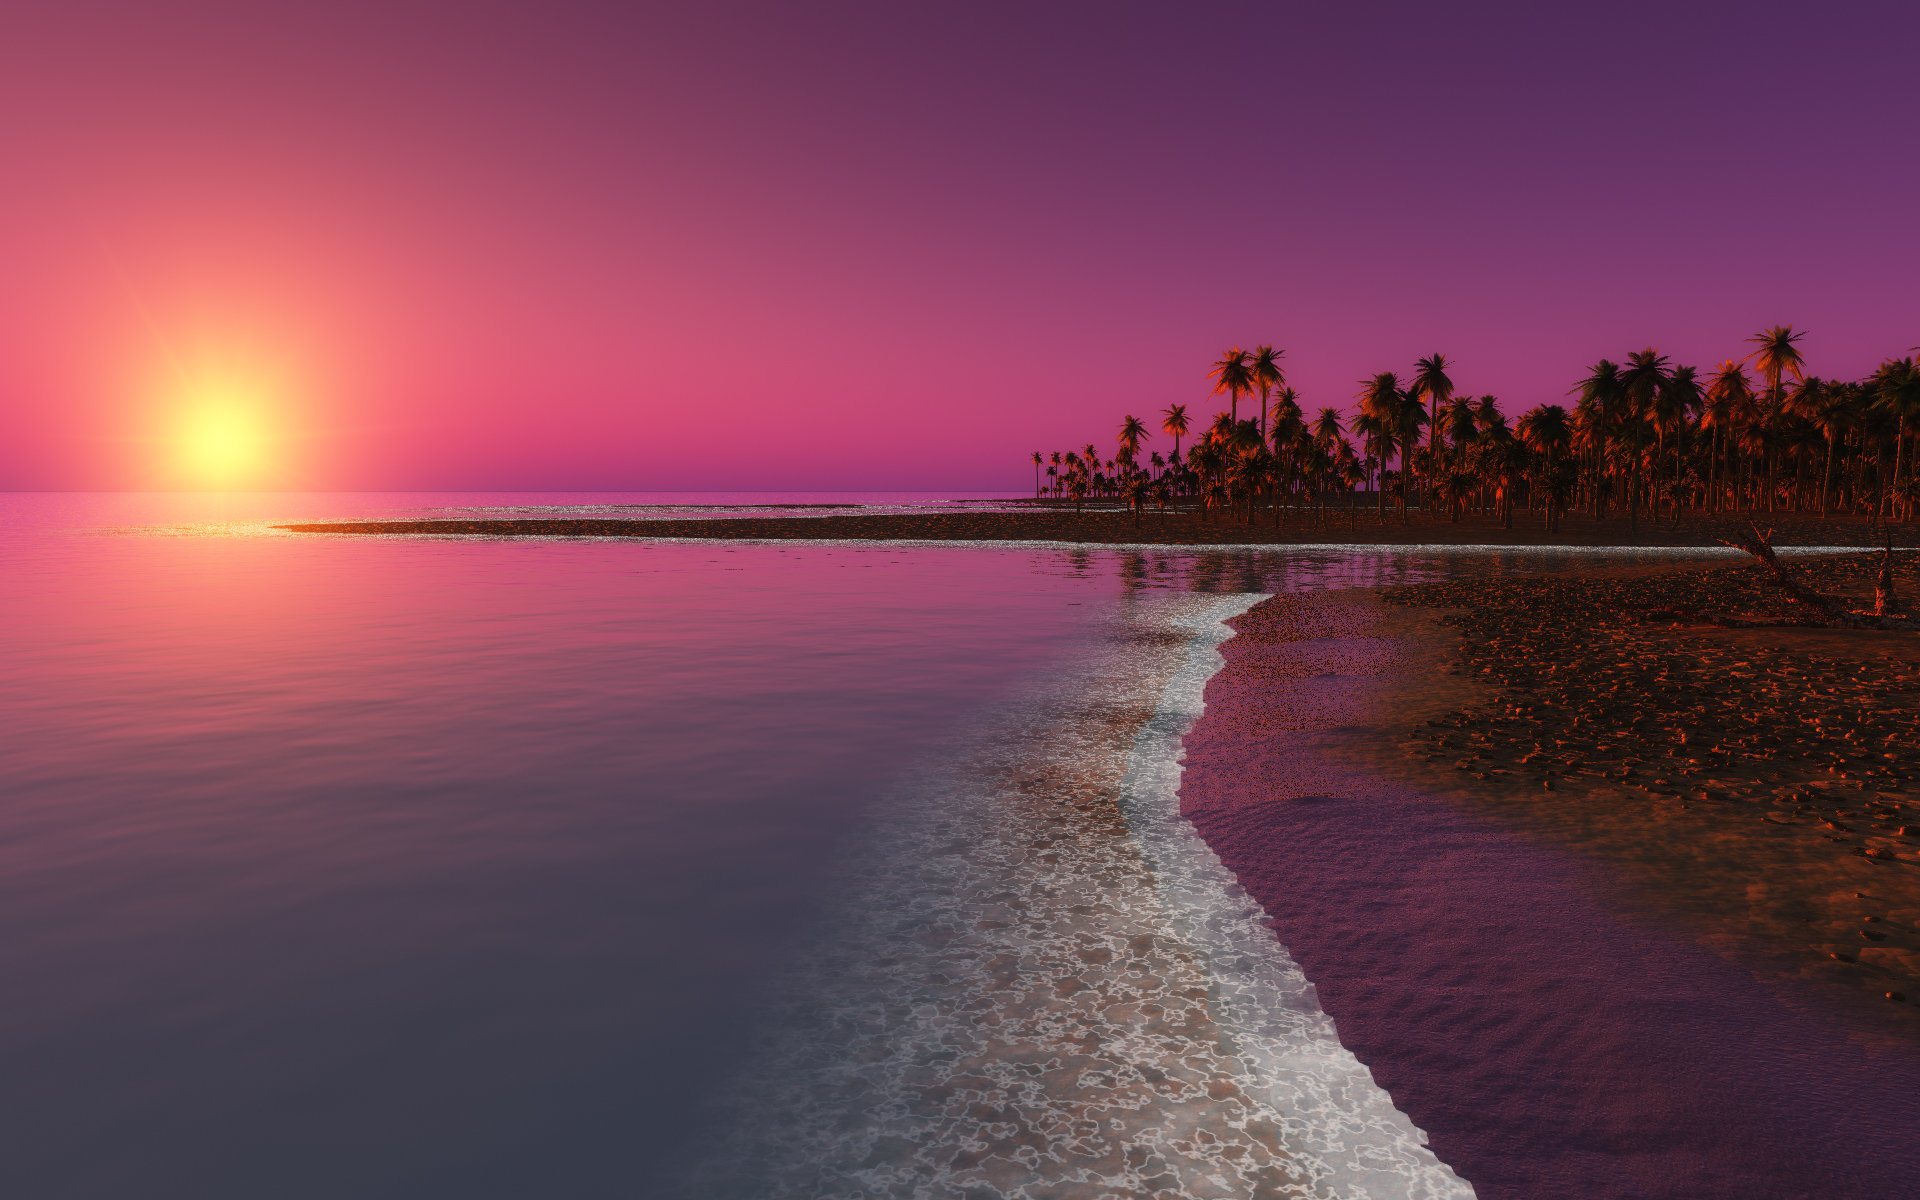 summer sunset desktop wallpaper